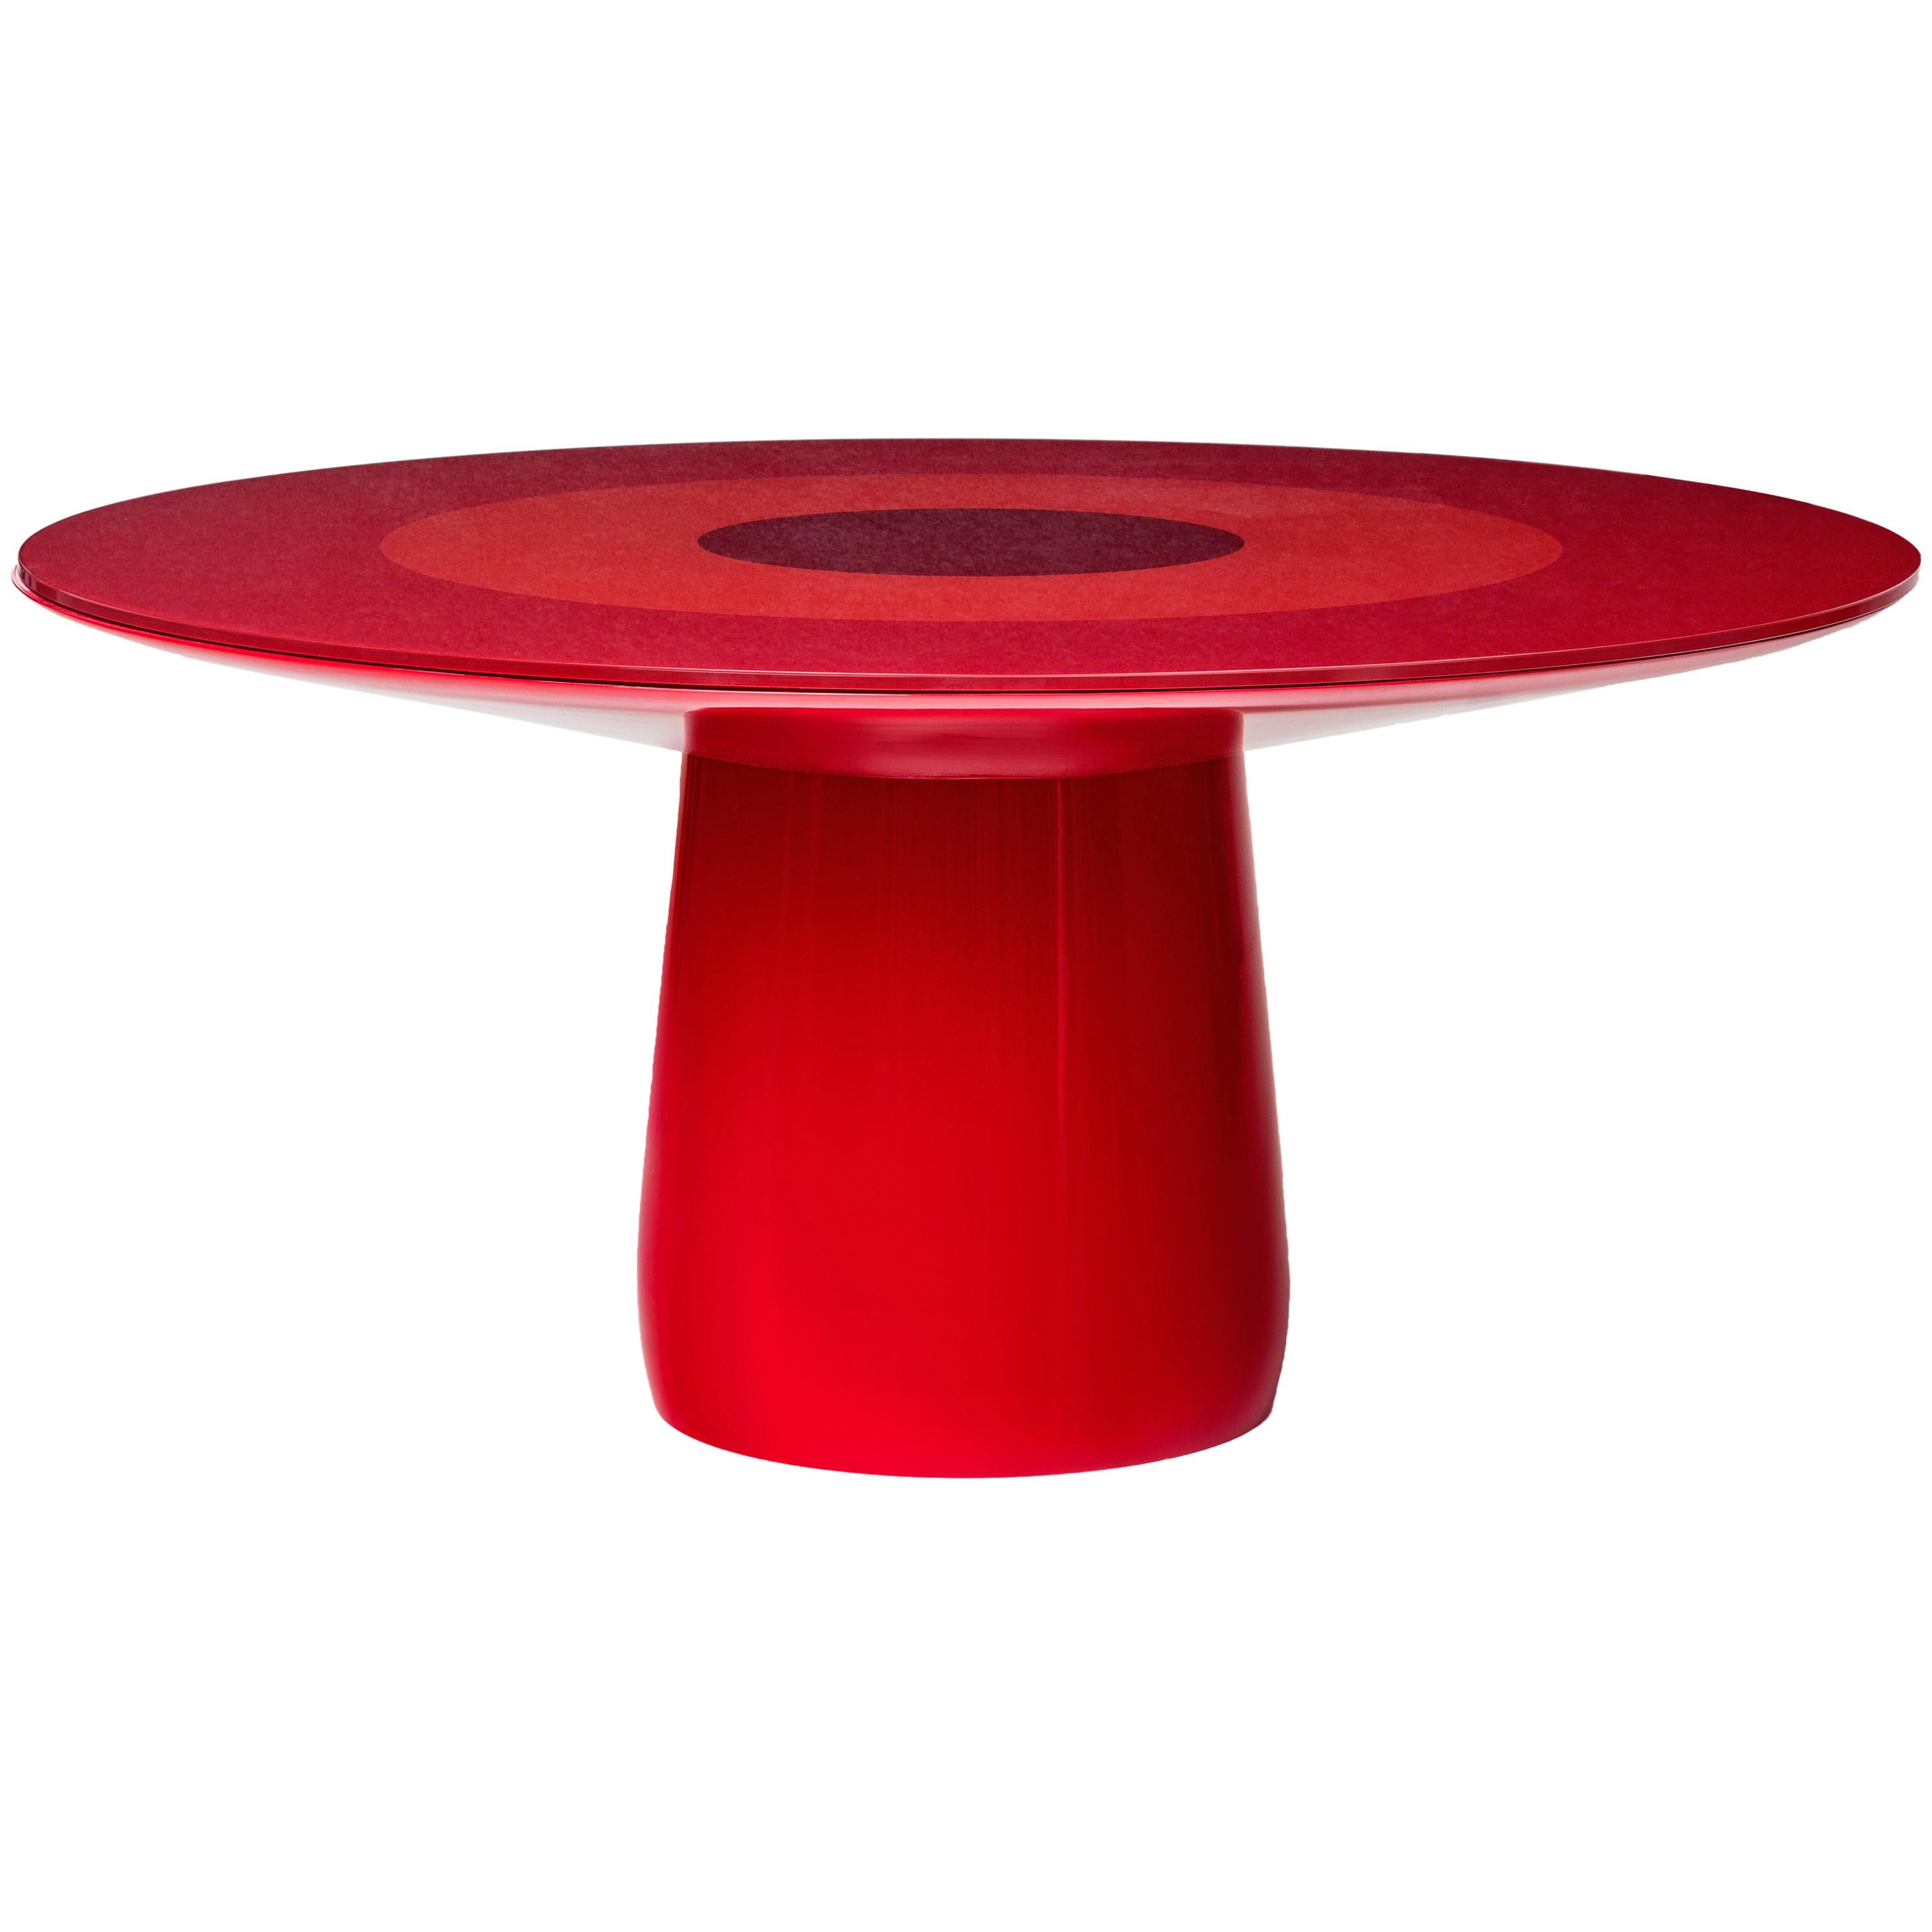 Baleri Italia Roundel Table with Red Lacquer & Glass Top, Claesson Koivisto Rune